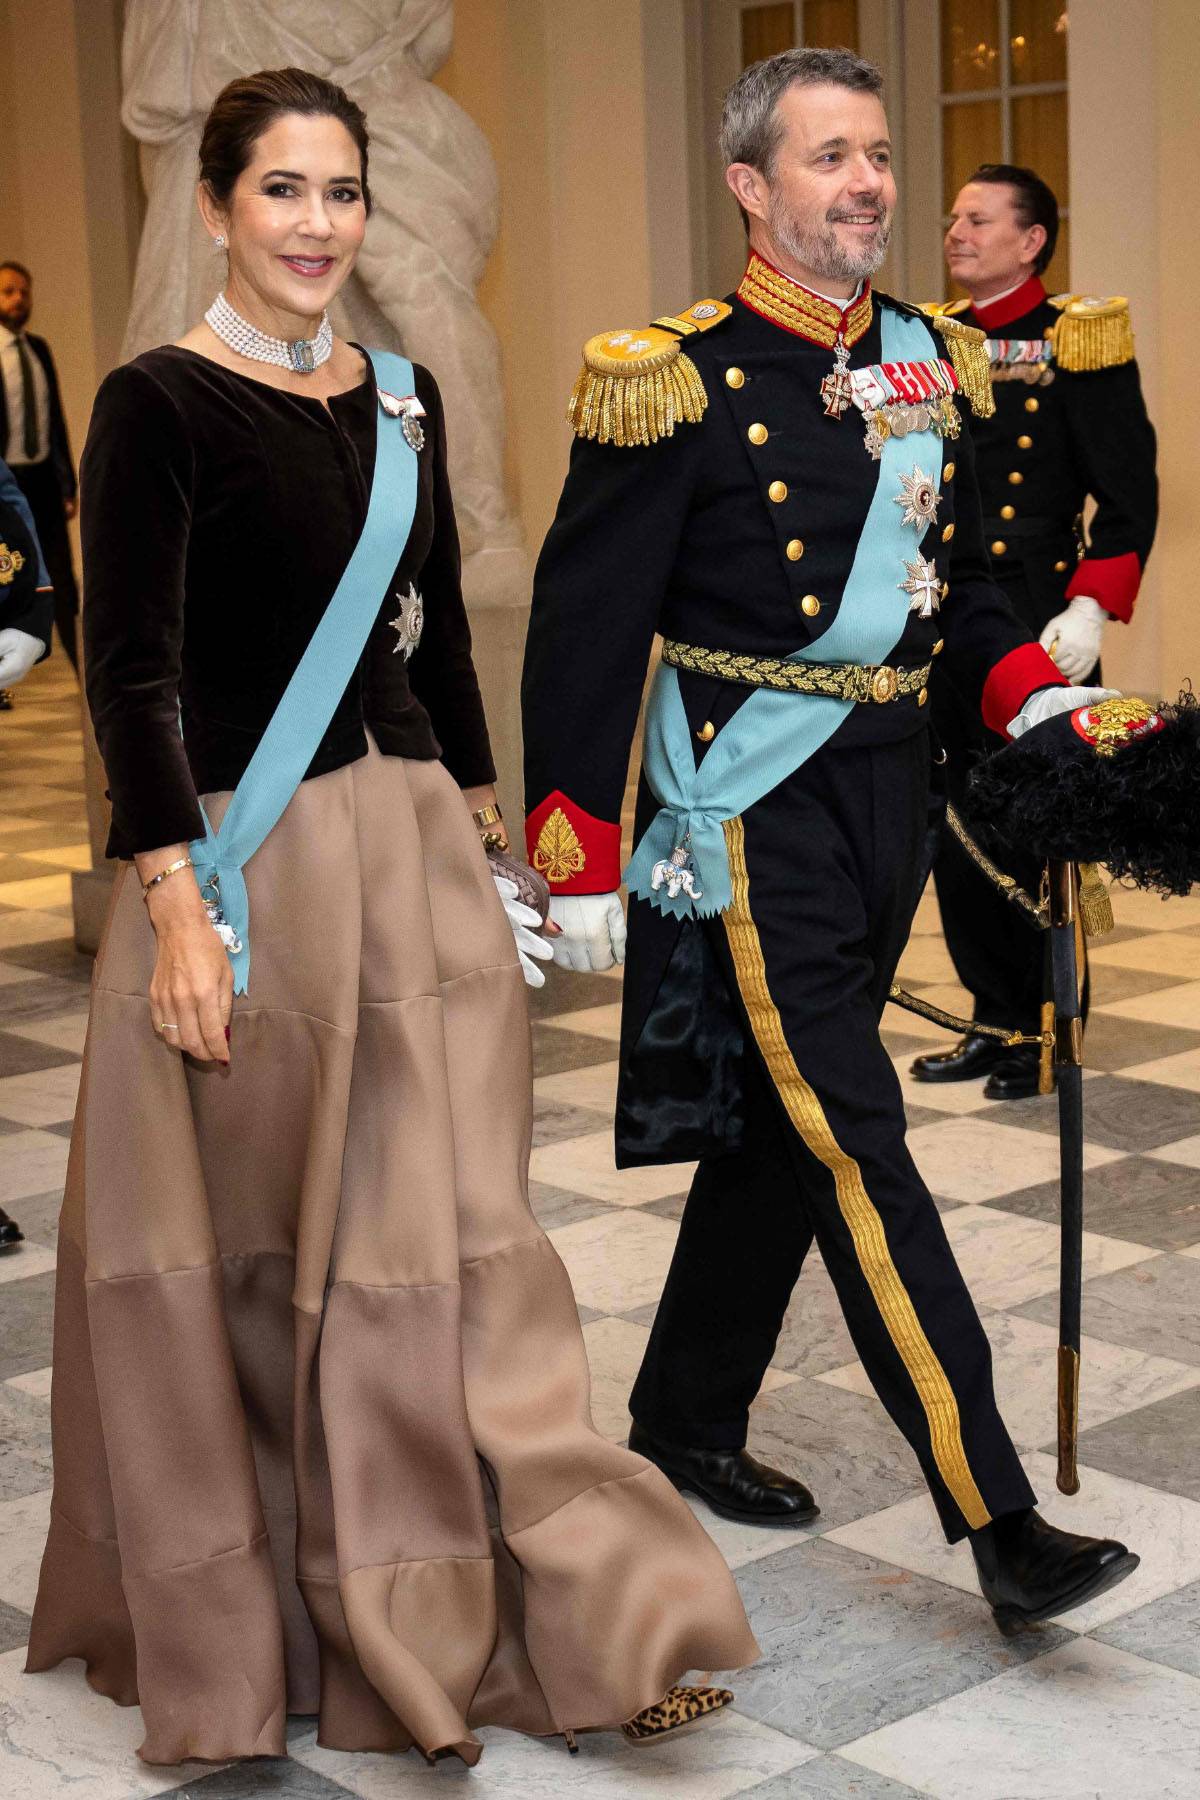 Księżna Maria w welurowym żakiecie i balowej spódnicy. Przyszła królowa Danii, księżna Maria, w kontrastowej stylizacji udowadnia, że jest gotowa do objęcia roli najlepiej ubranej monarchinii.